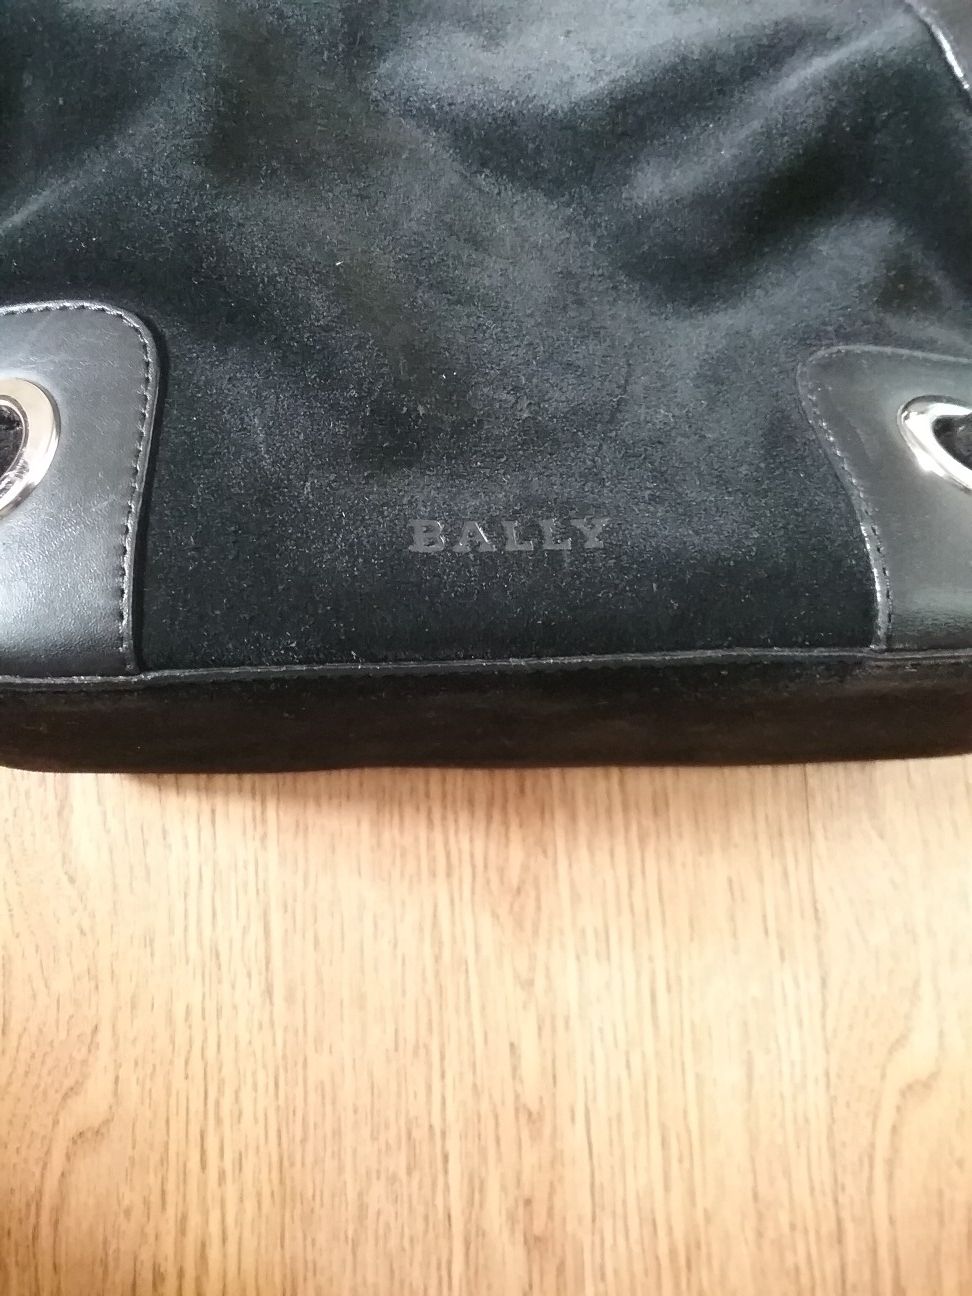 Bally shoulder bag